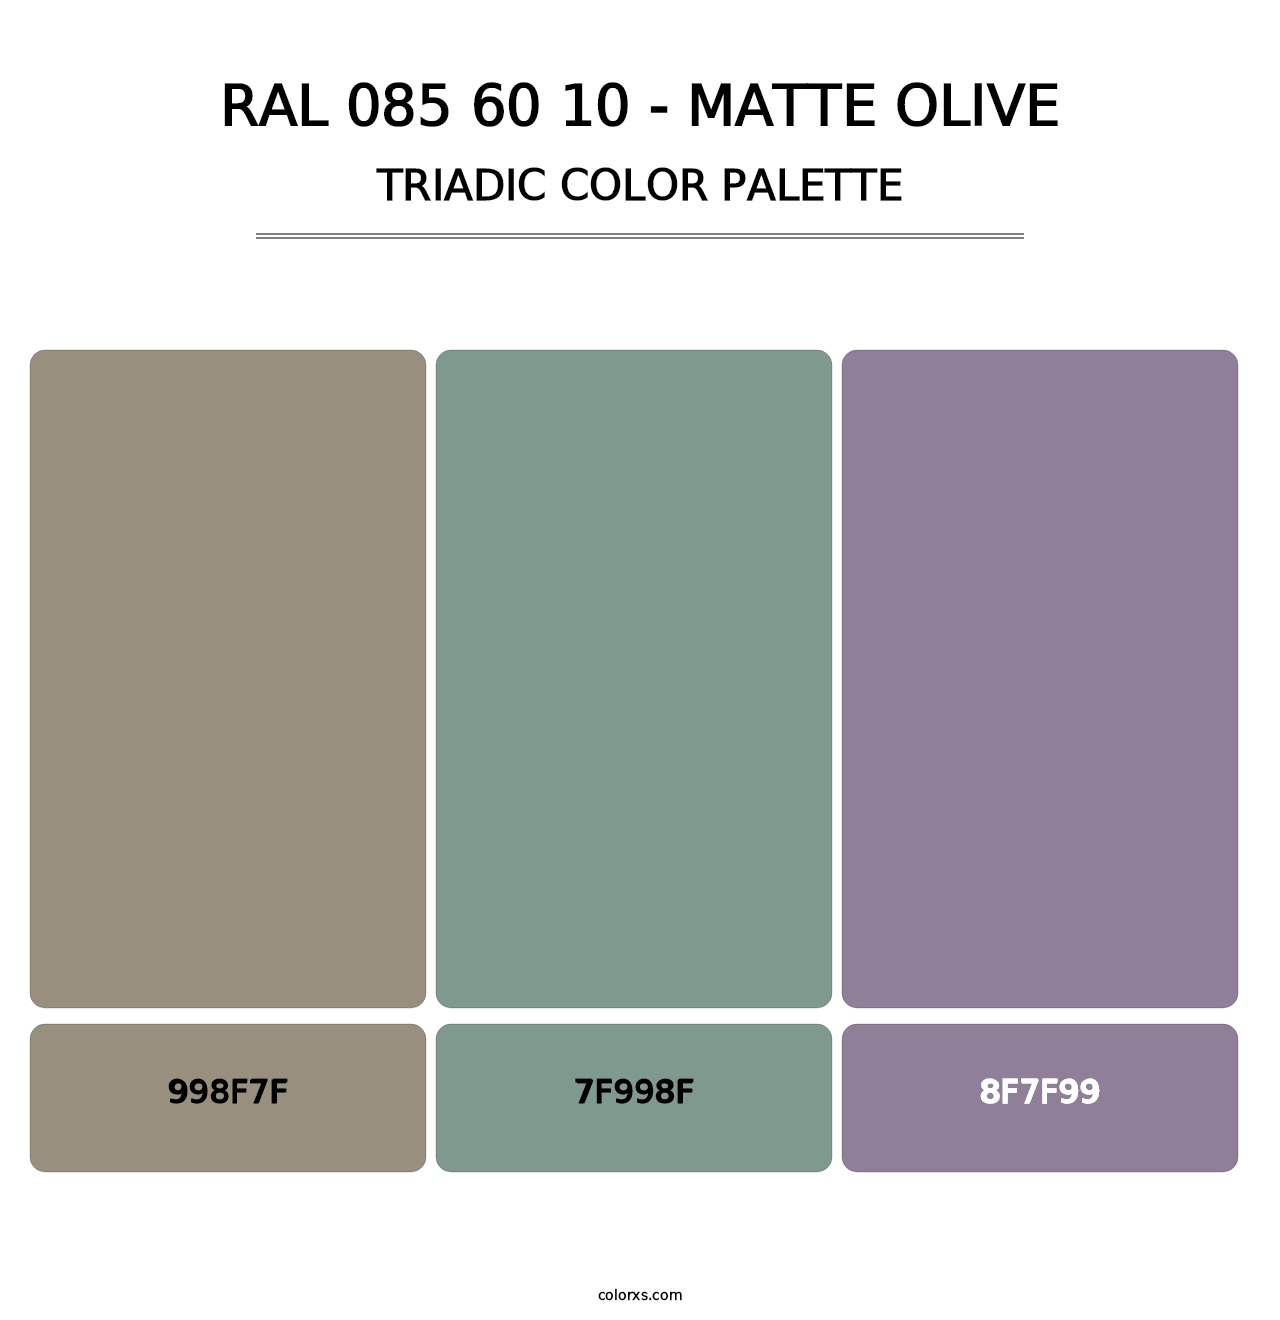 RAL 085 60 10 - Matte Olive - Triadic Color Palette